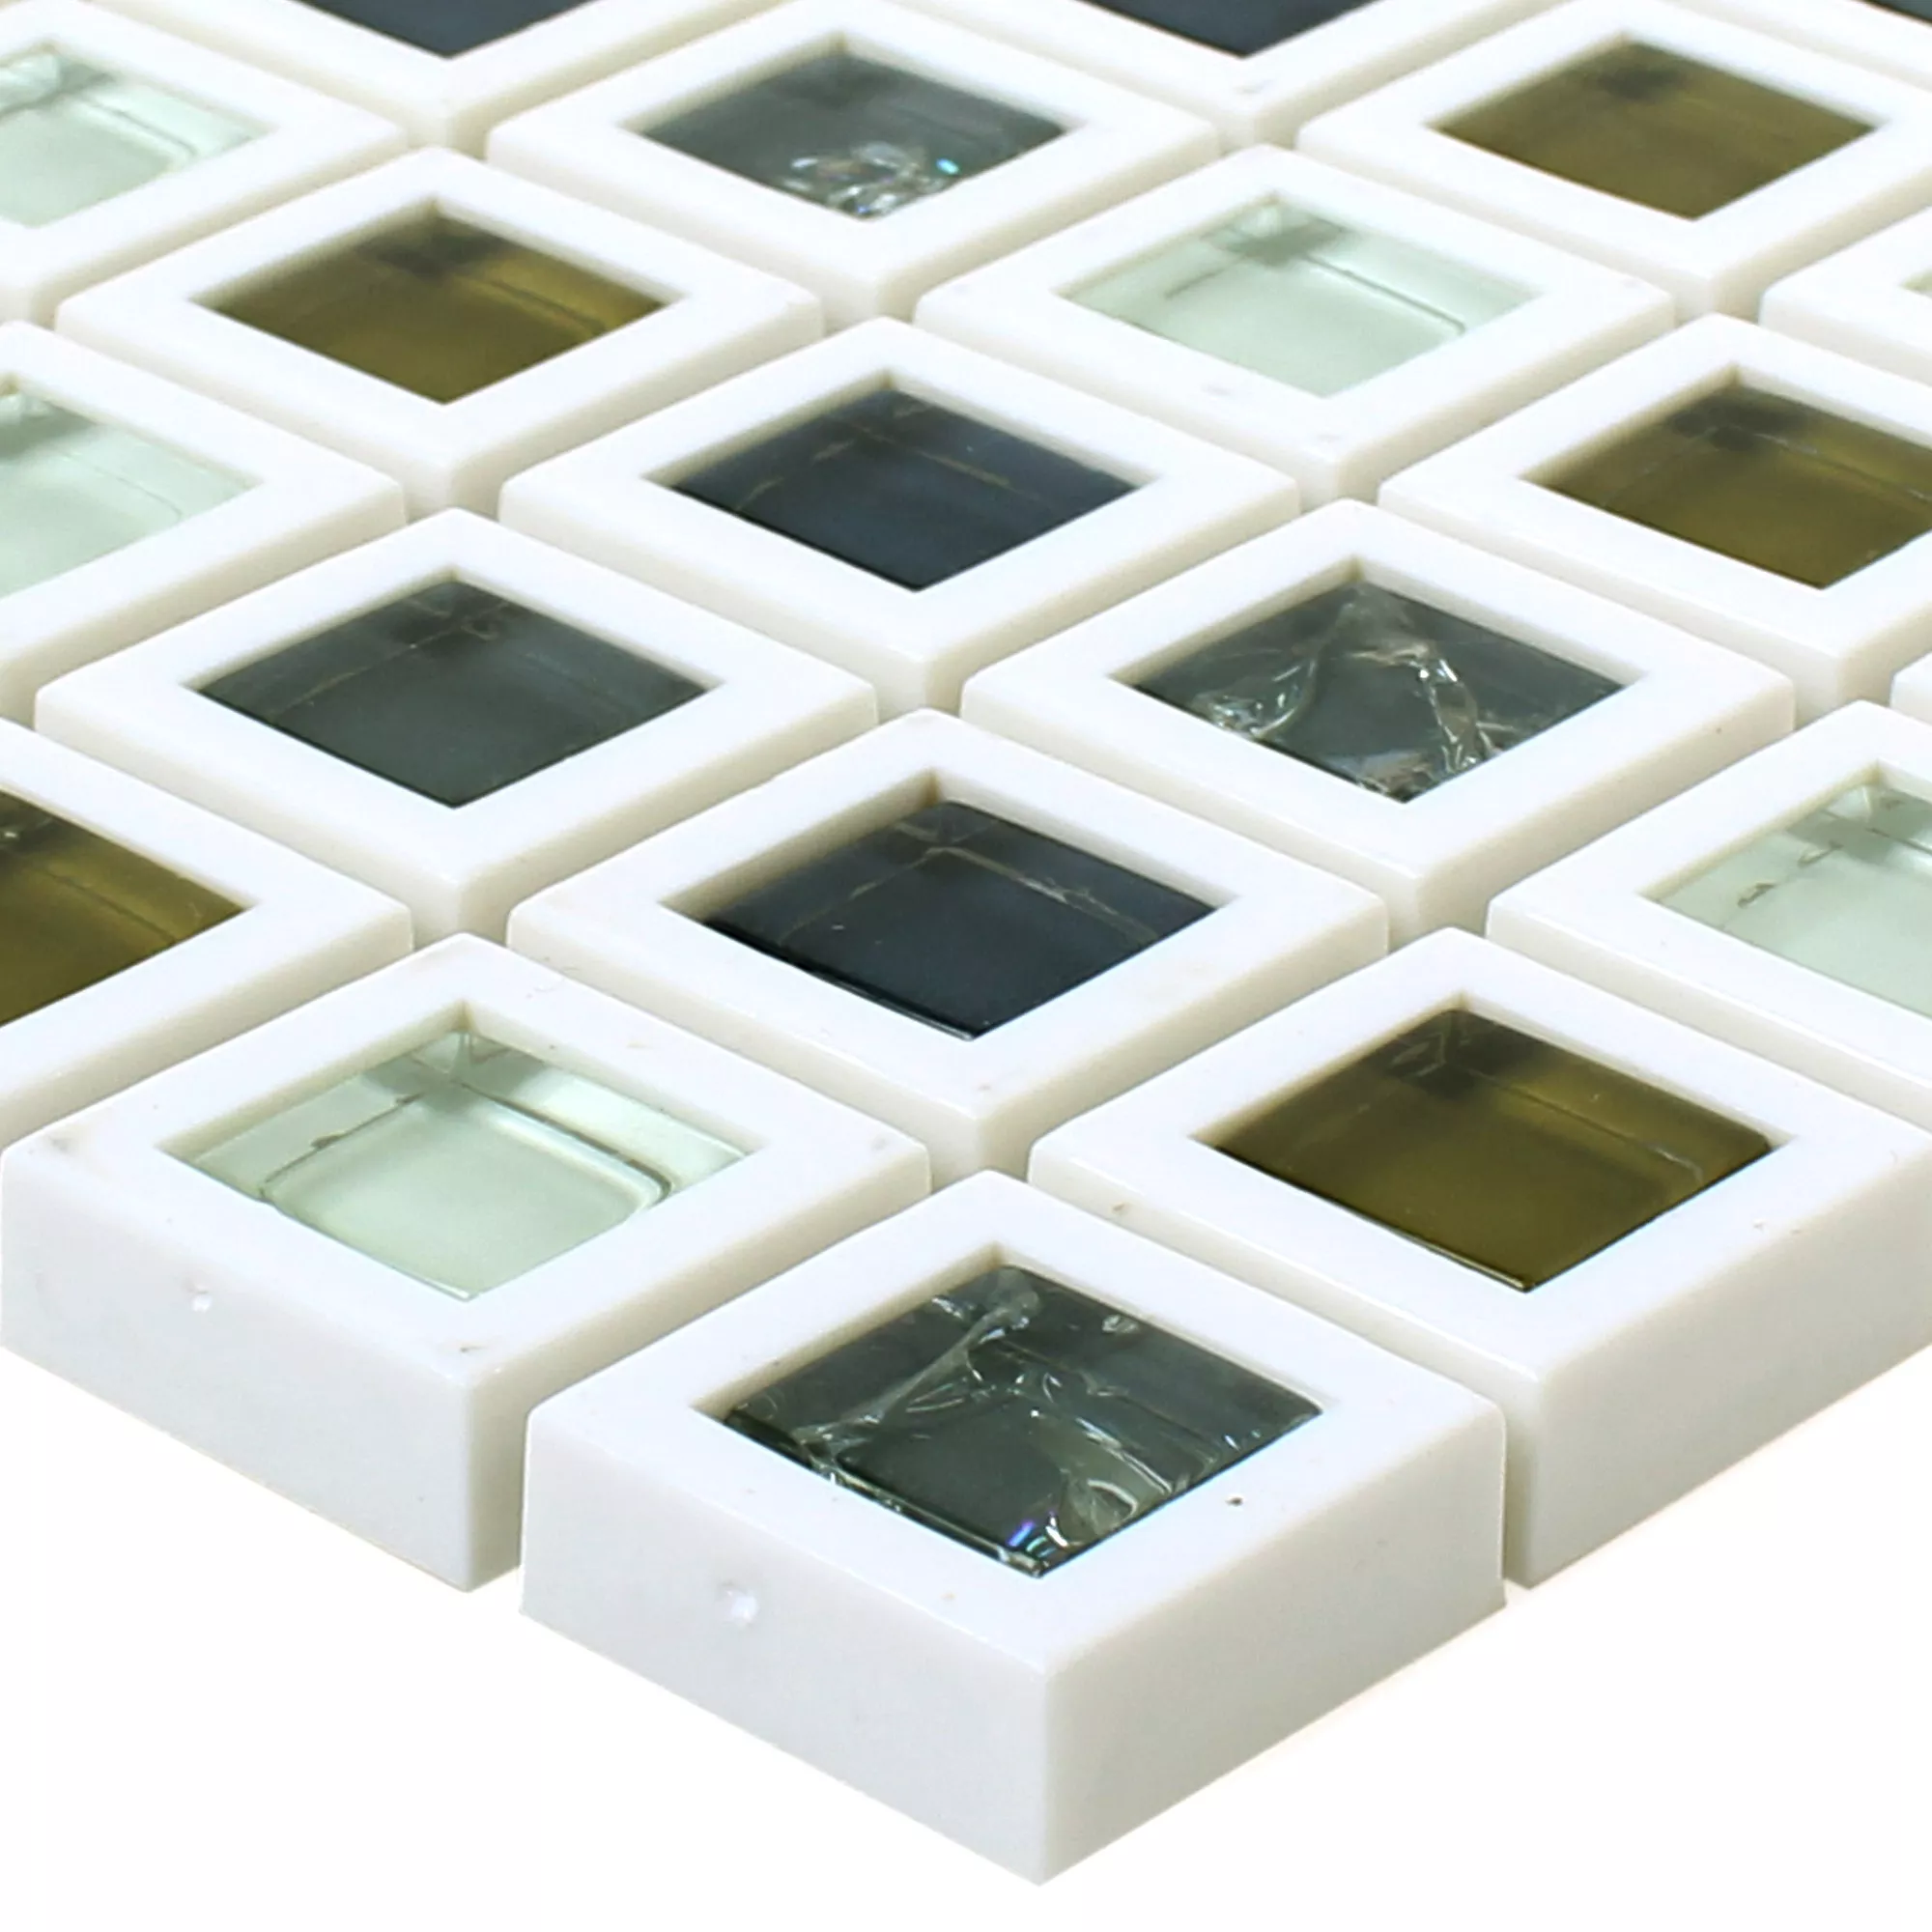 Szkło Plastikowy Mozaika Anatolia Zielony Biały